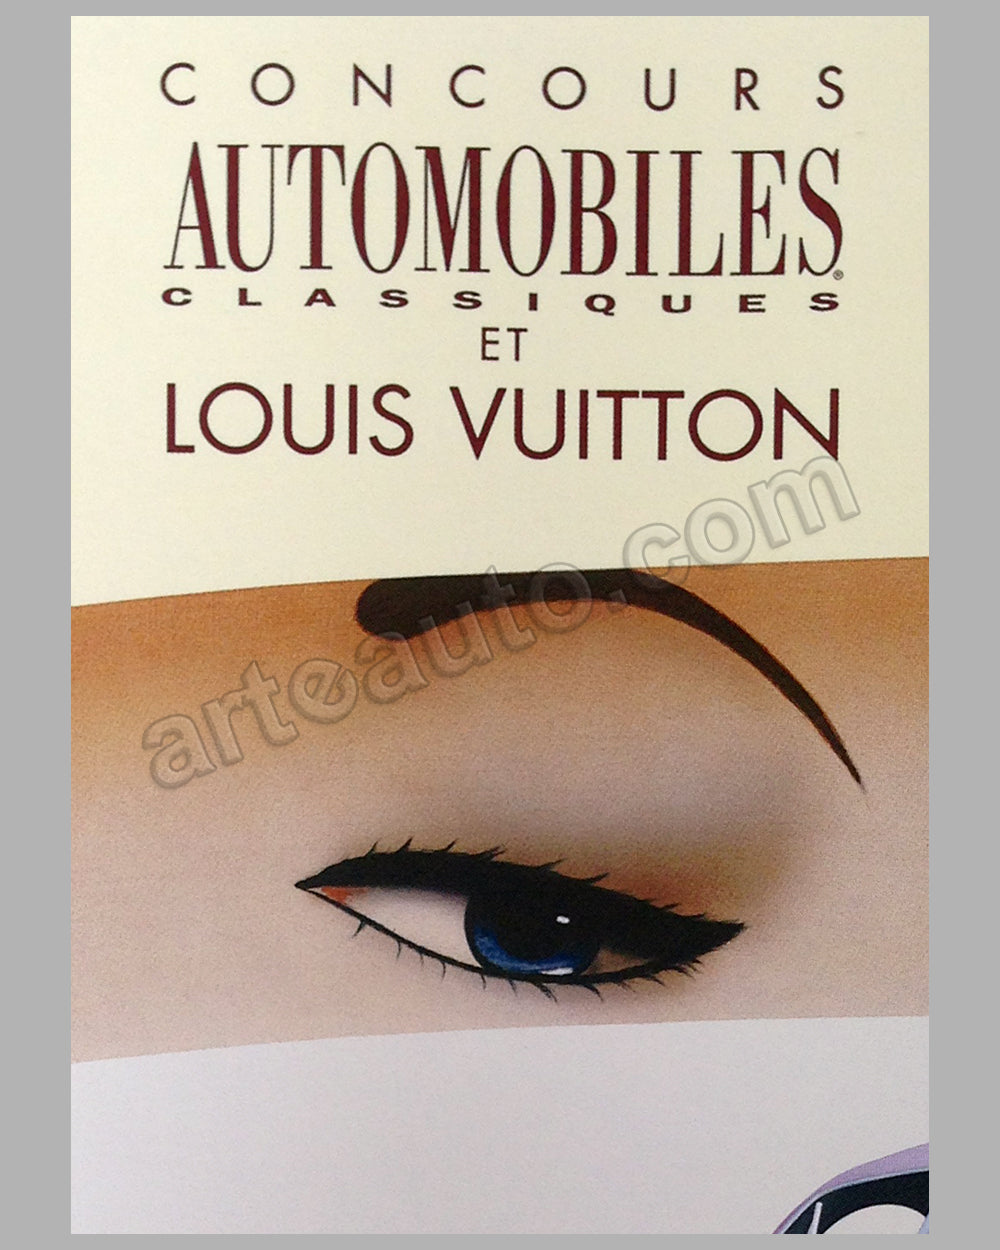 Louis Vuitton Bagatelle Concours d'Elegance event poster by Razzia